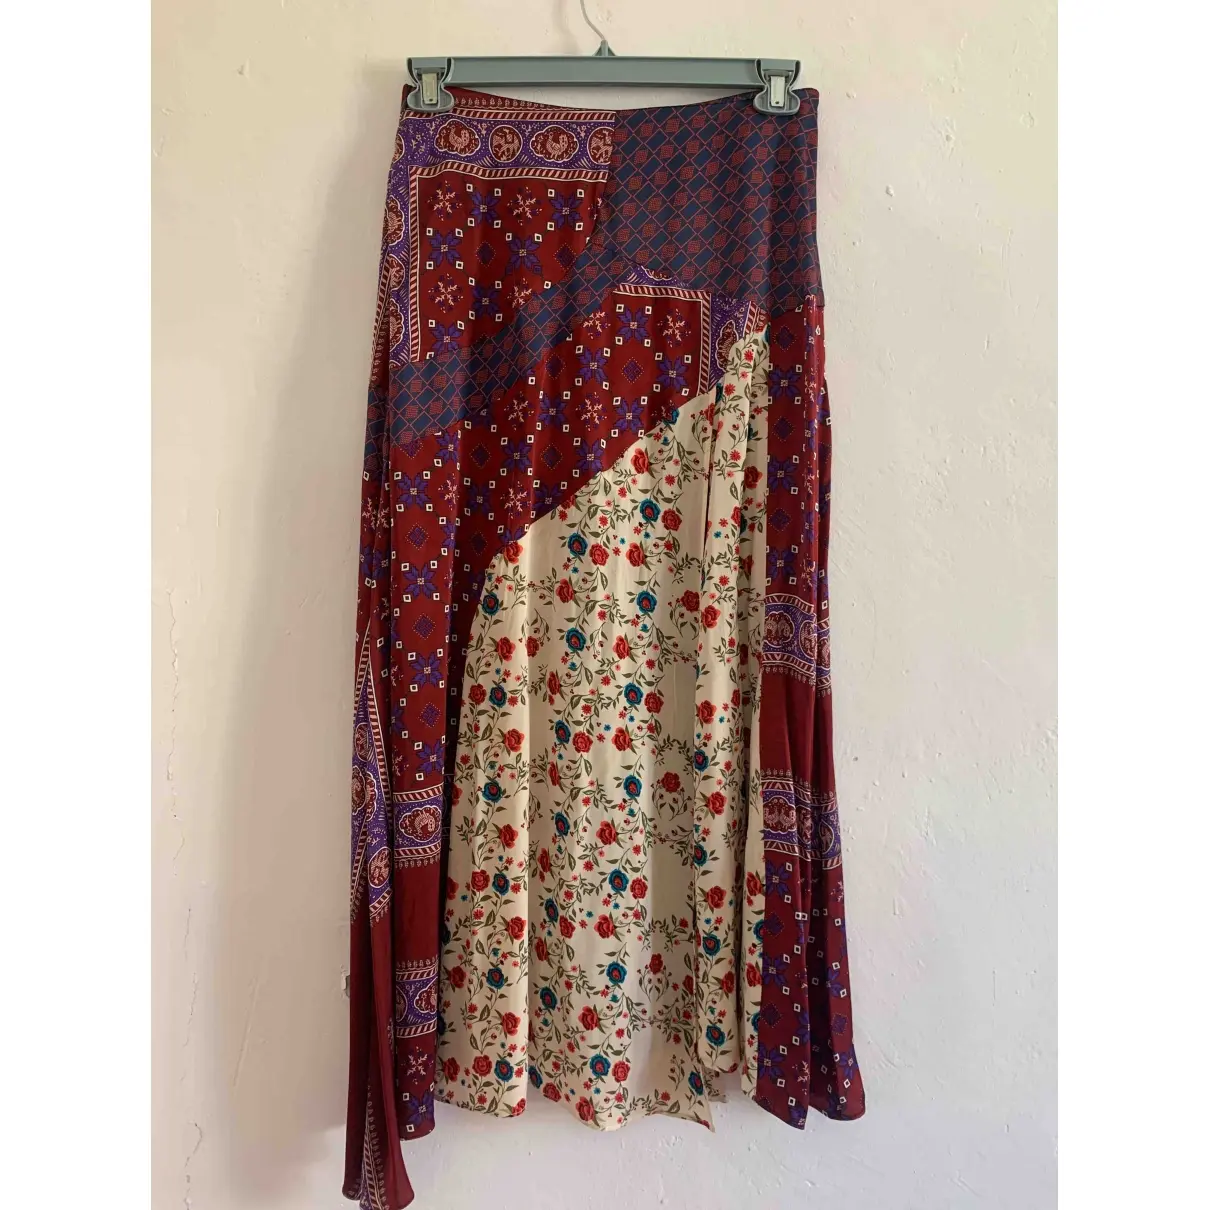 Sandro Spring Summer 2019 mid-length skirt for sale